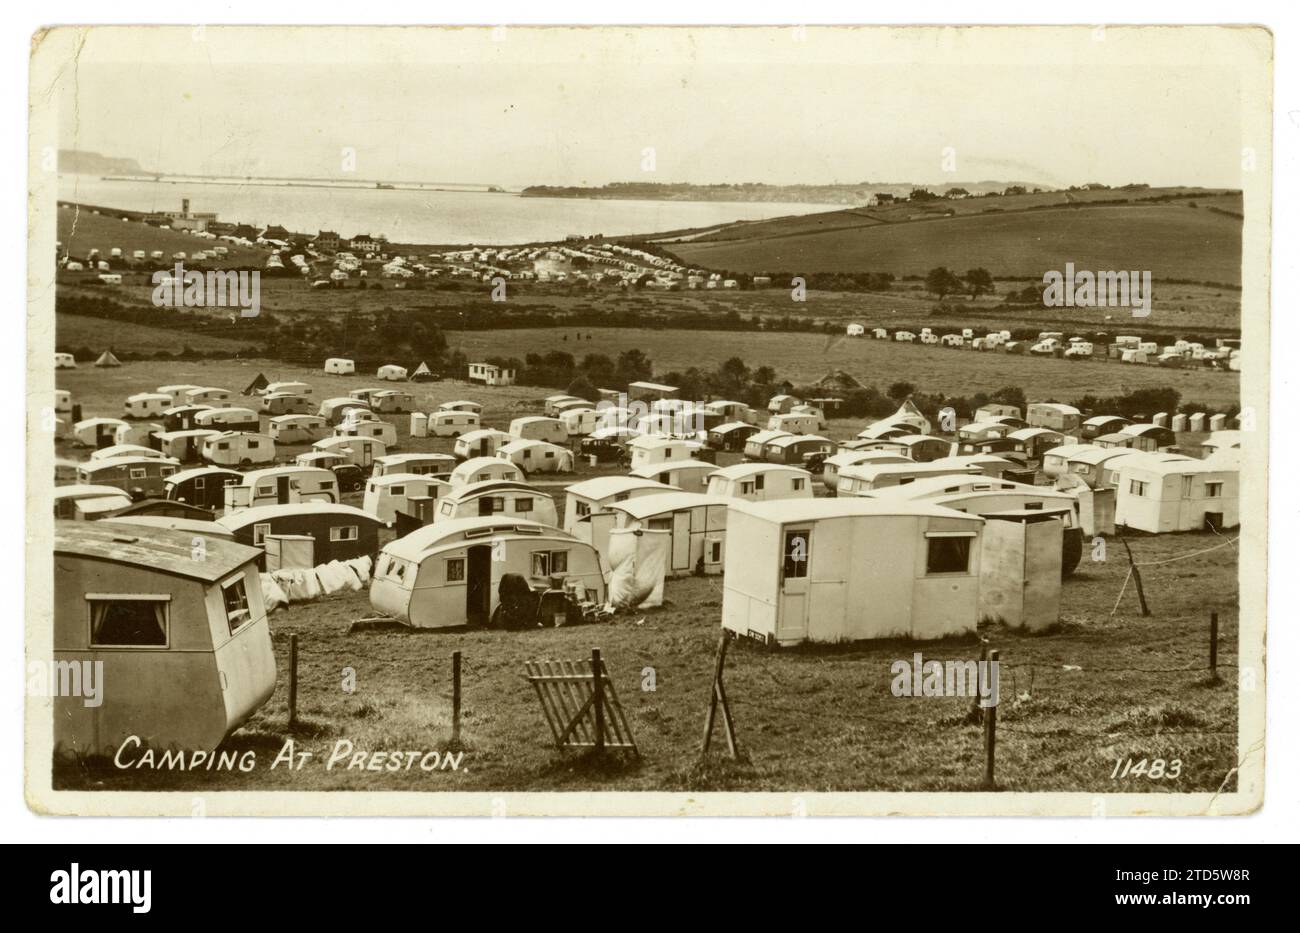 Carte postale originale de l'ère des années 1950 d'un parc de caravanes occupé / camping à Preston, près de Weymouth, Dorset, Royaume-Uni daté / posté août 1952 Banque D'Images